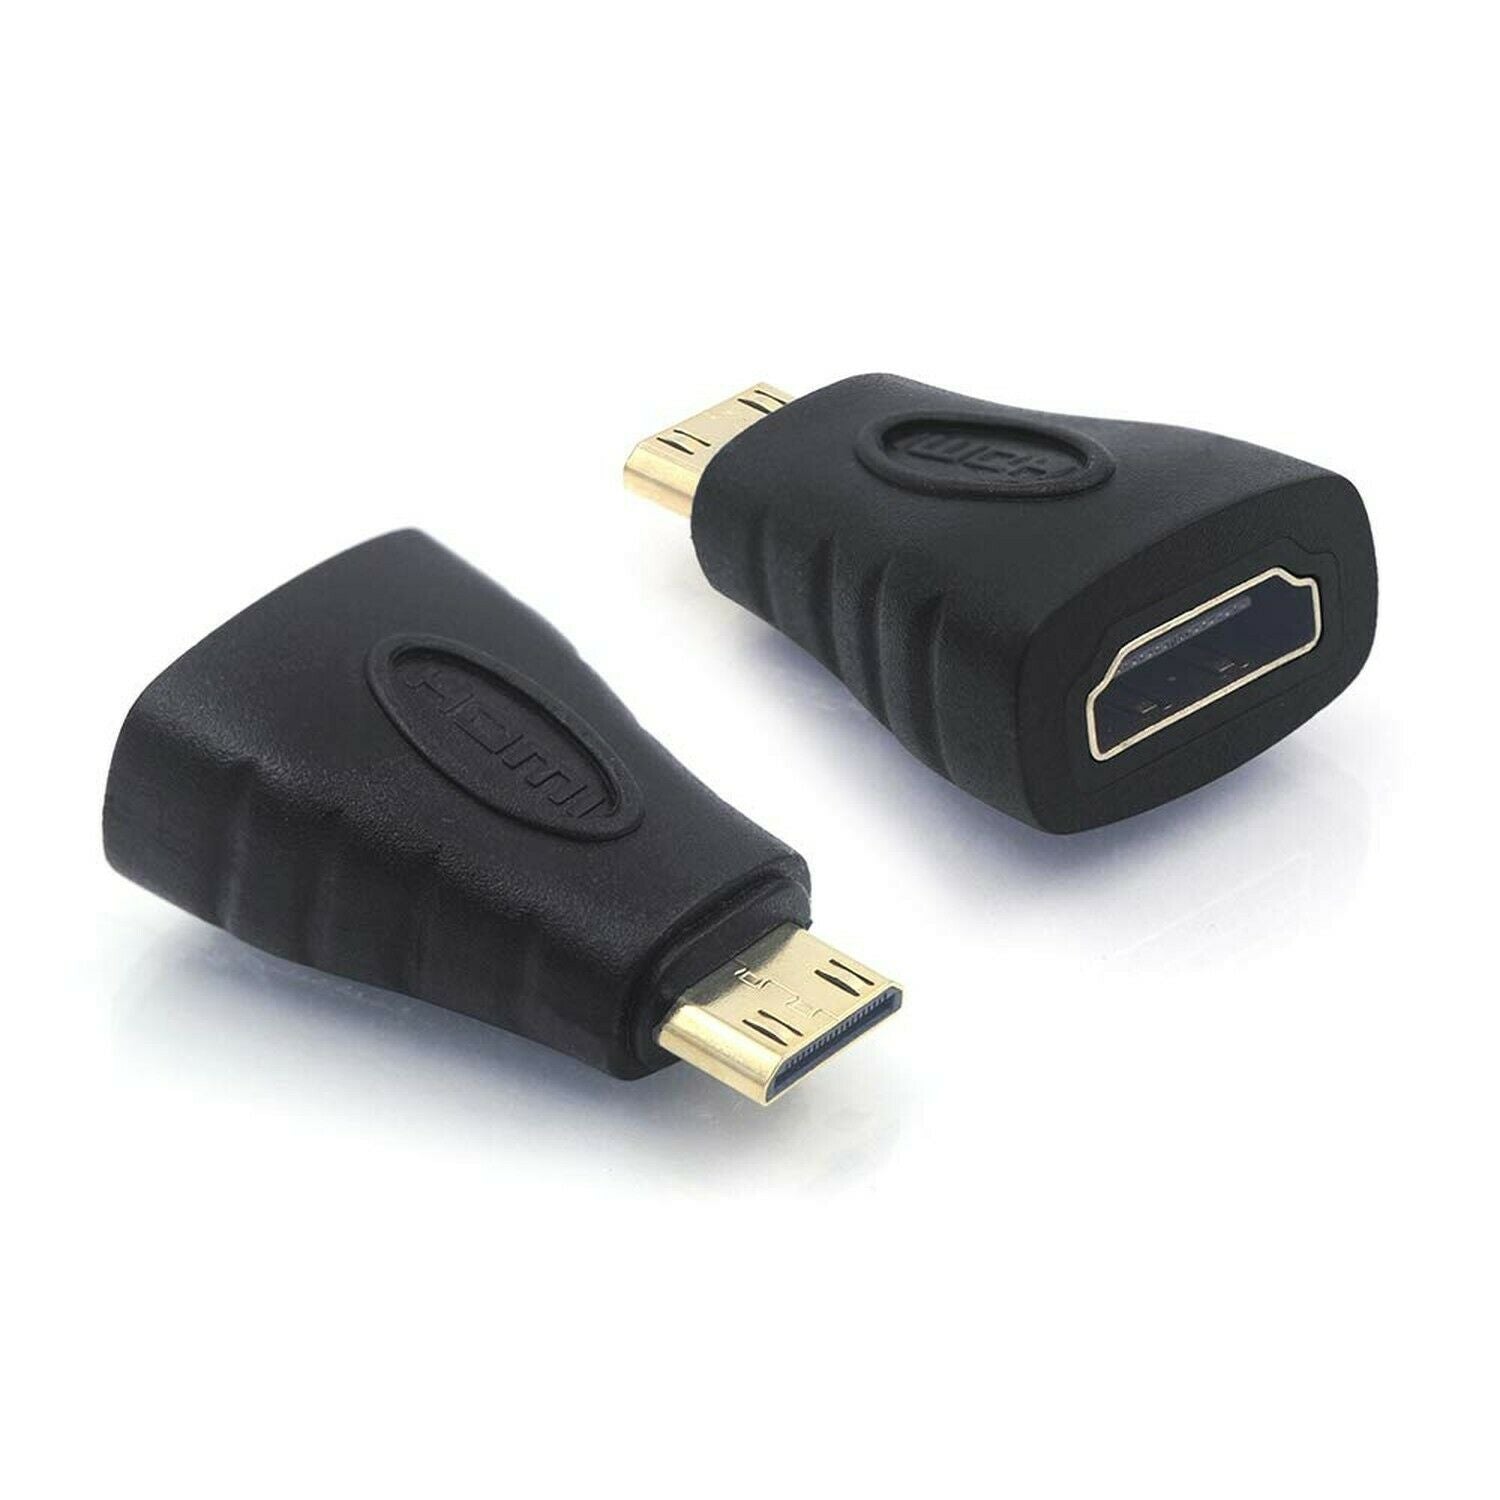 Mini HDMI Male to Female Adapter Convertor Connector Lead